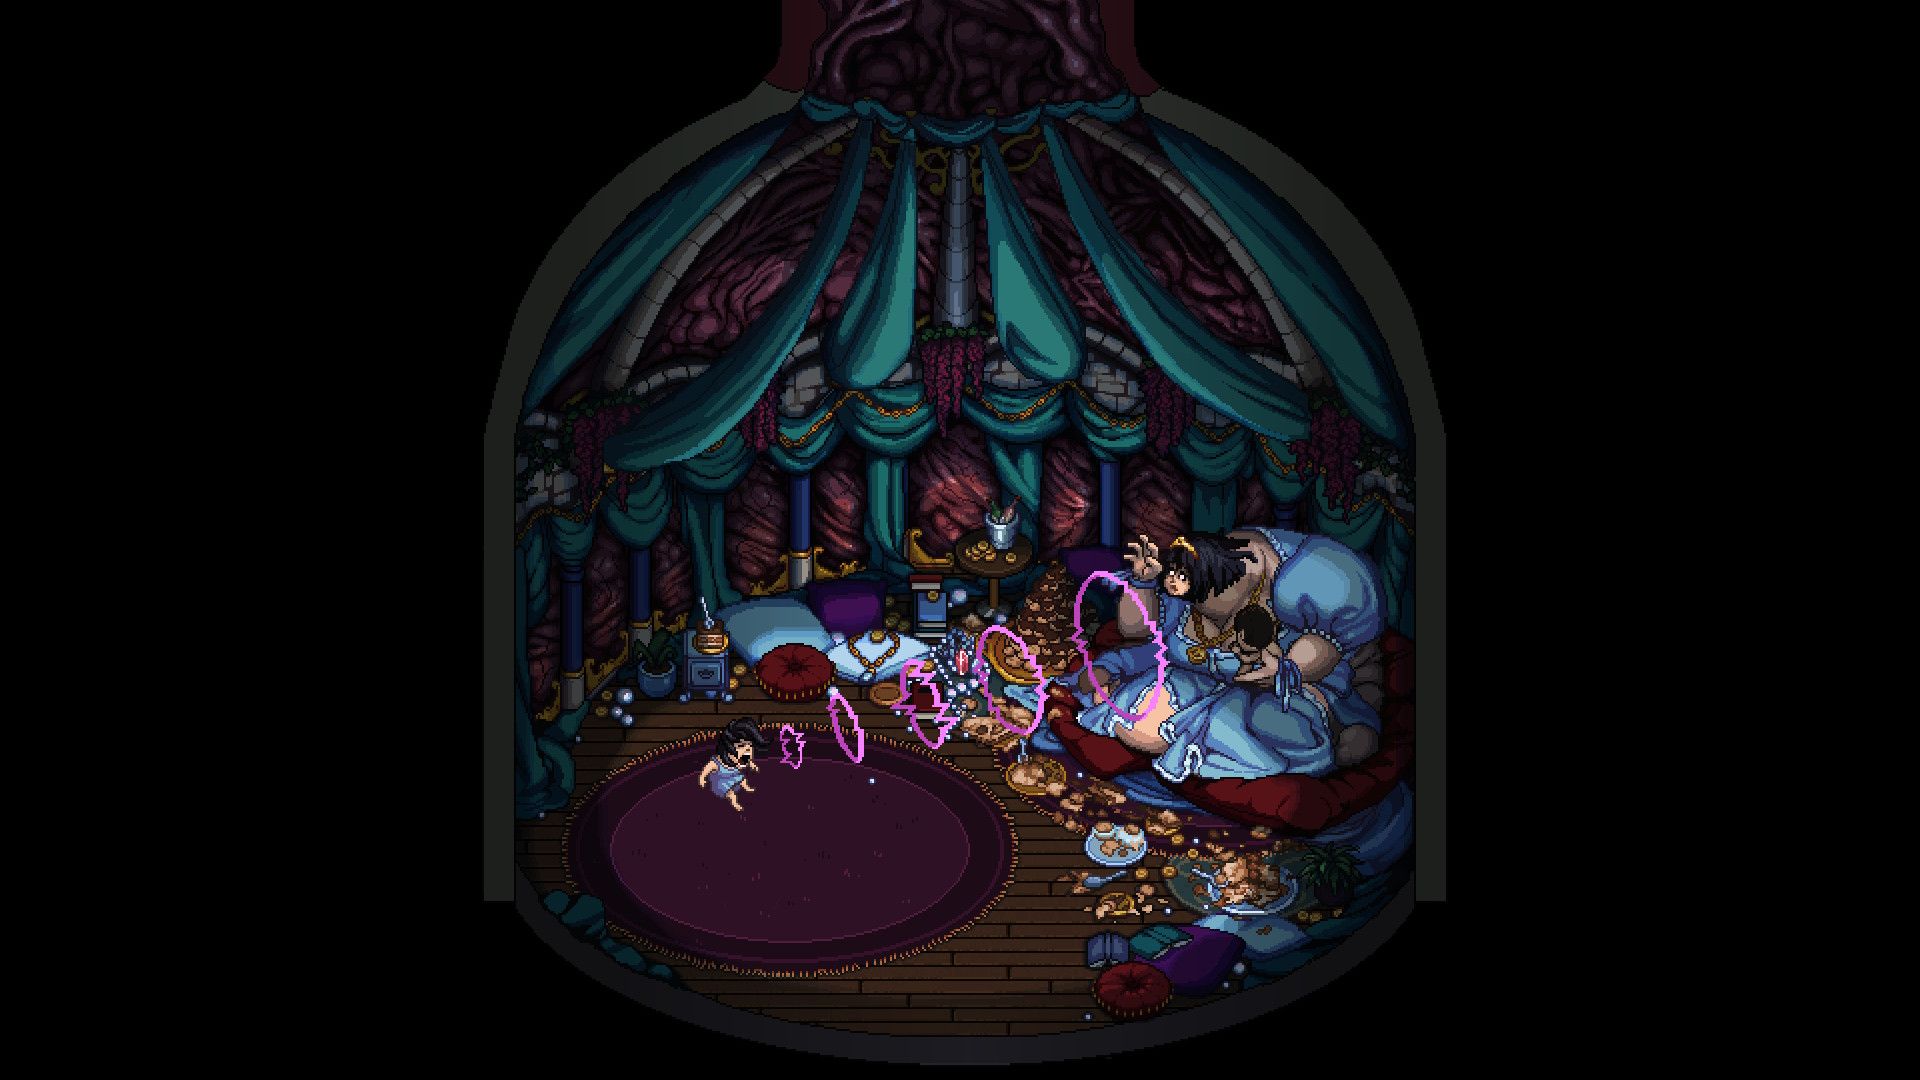 Image étrange du jeu horrifique Decarnation ou l'héroïne combat une princesse grotesque sur un canapé